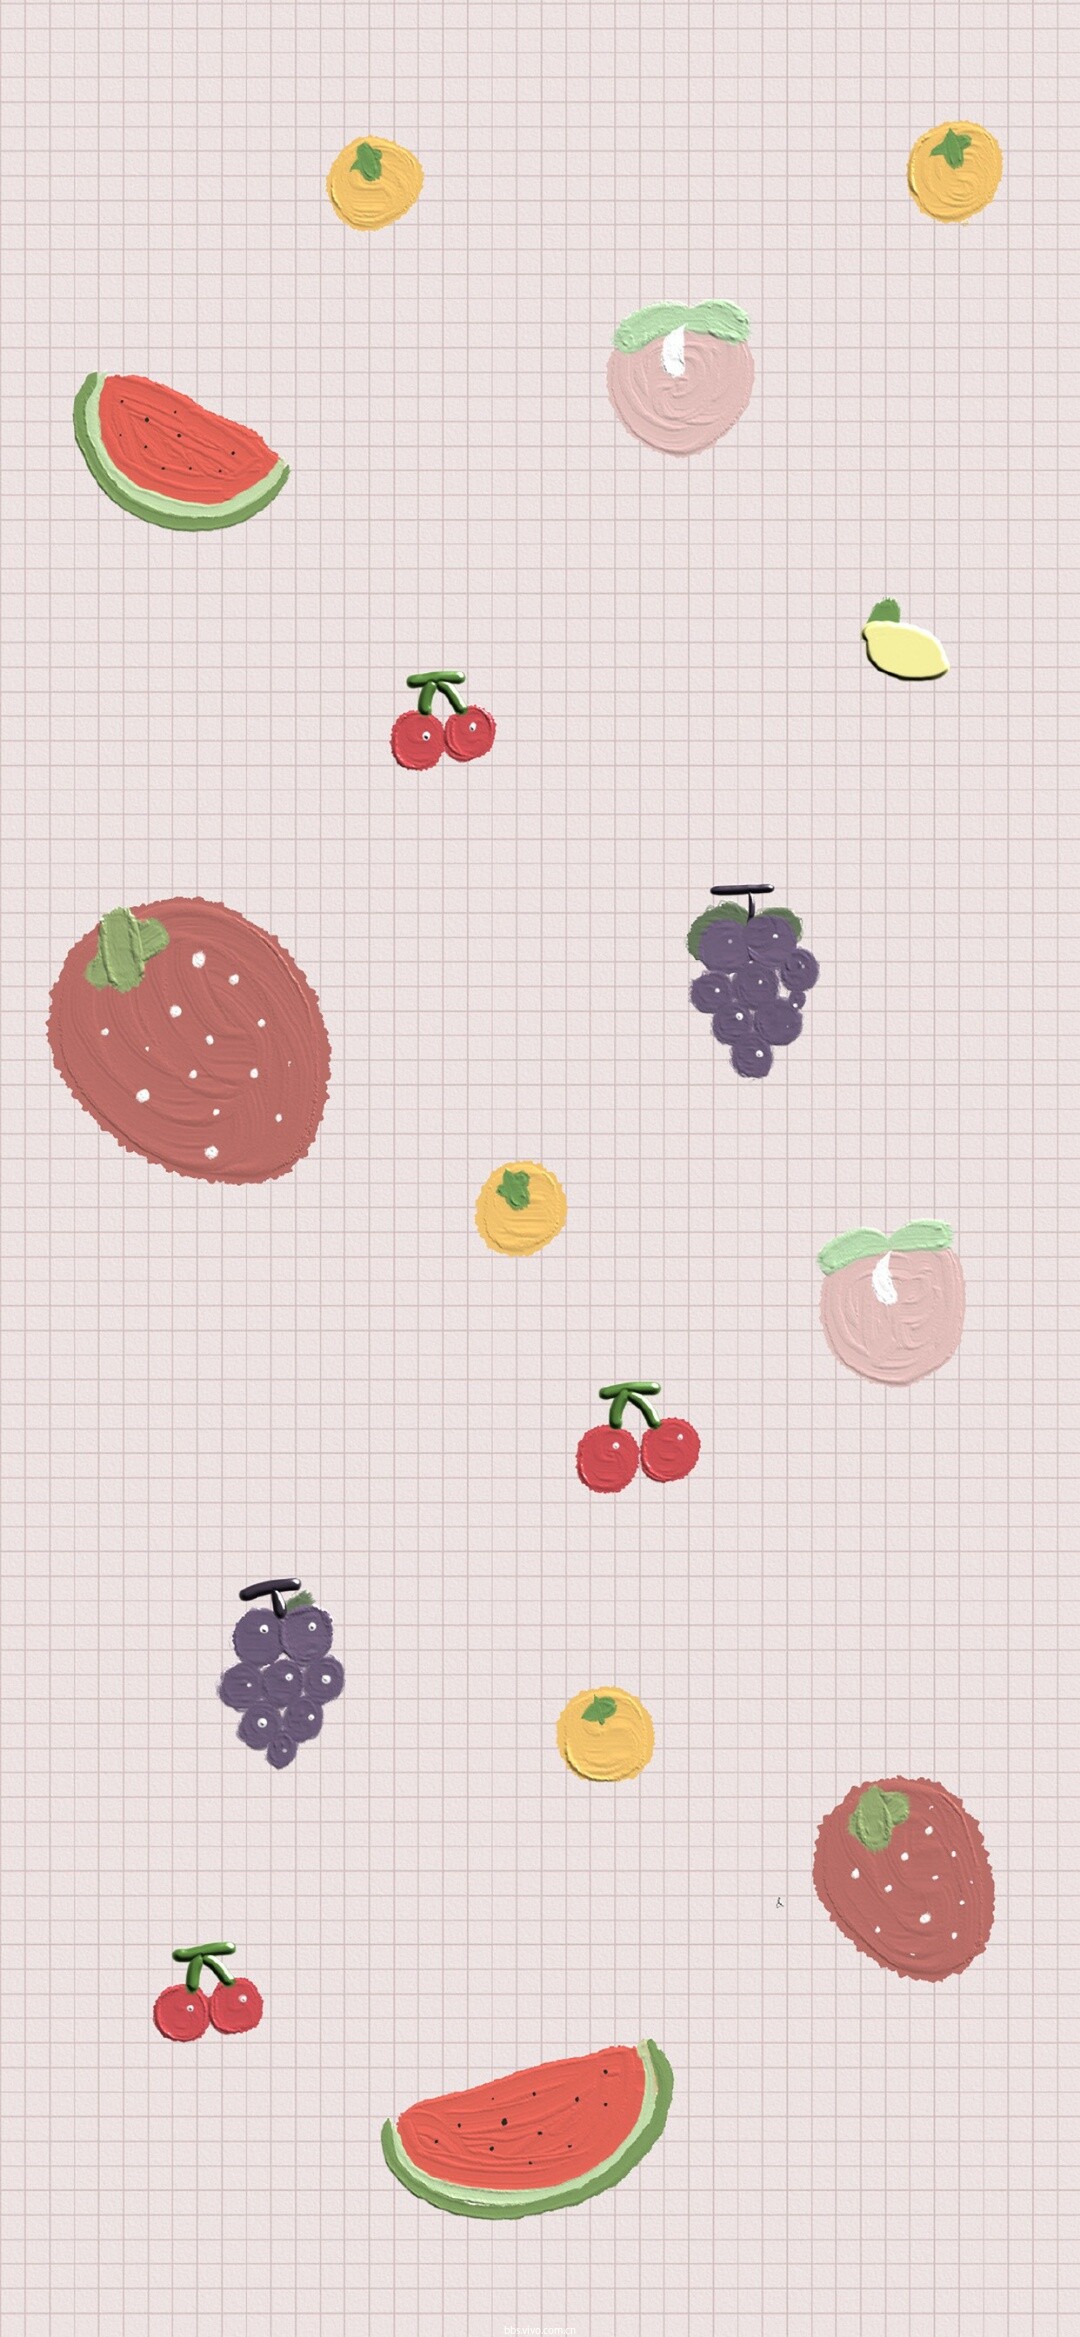 壁纸分享|小清新唯美水果壁纸